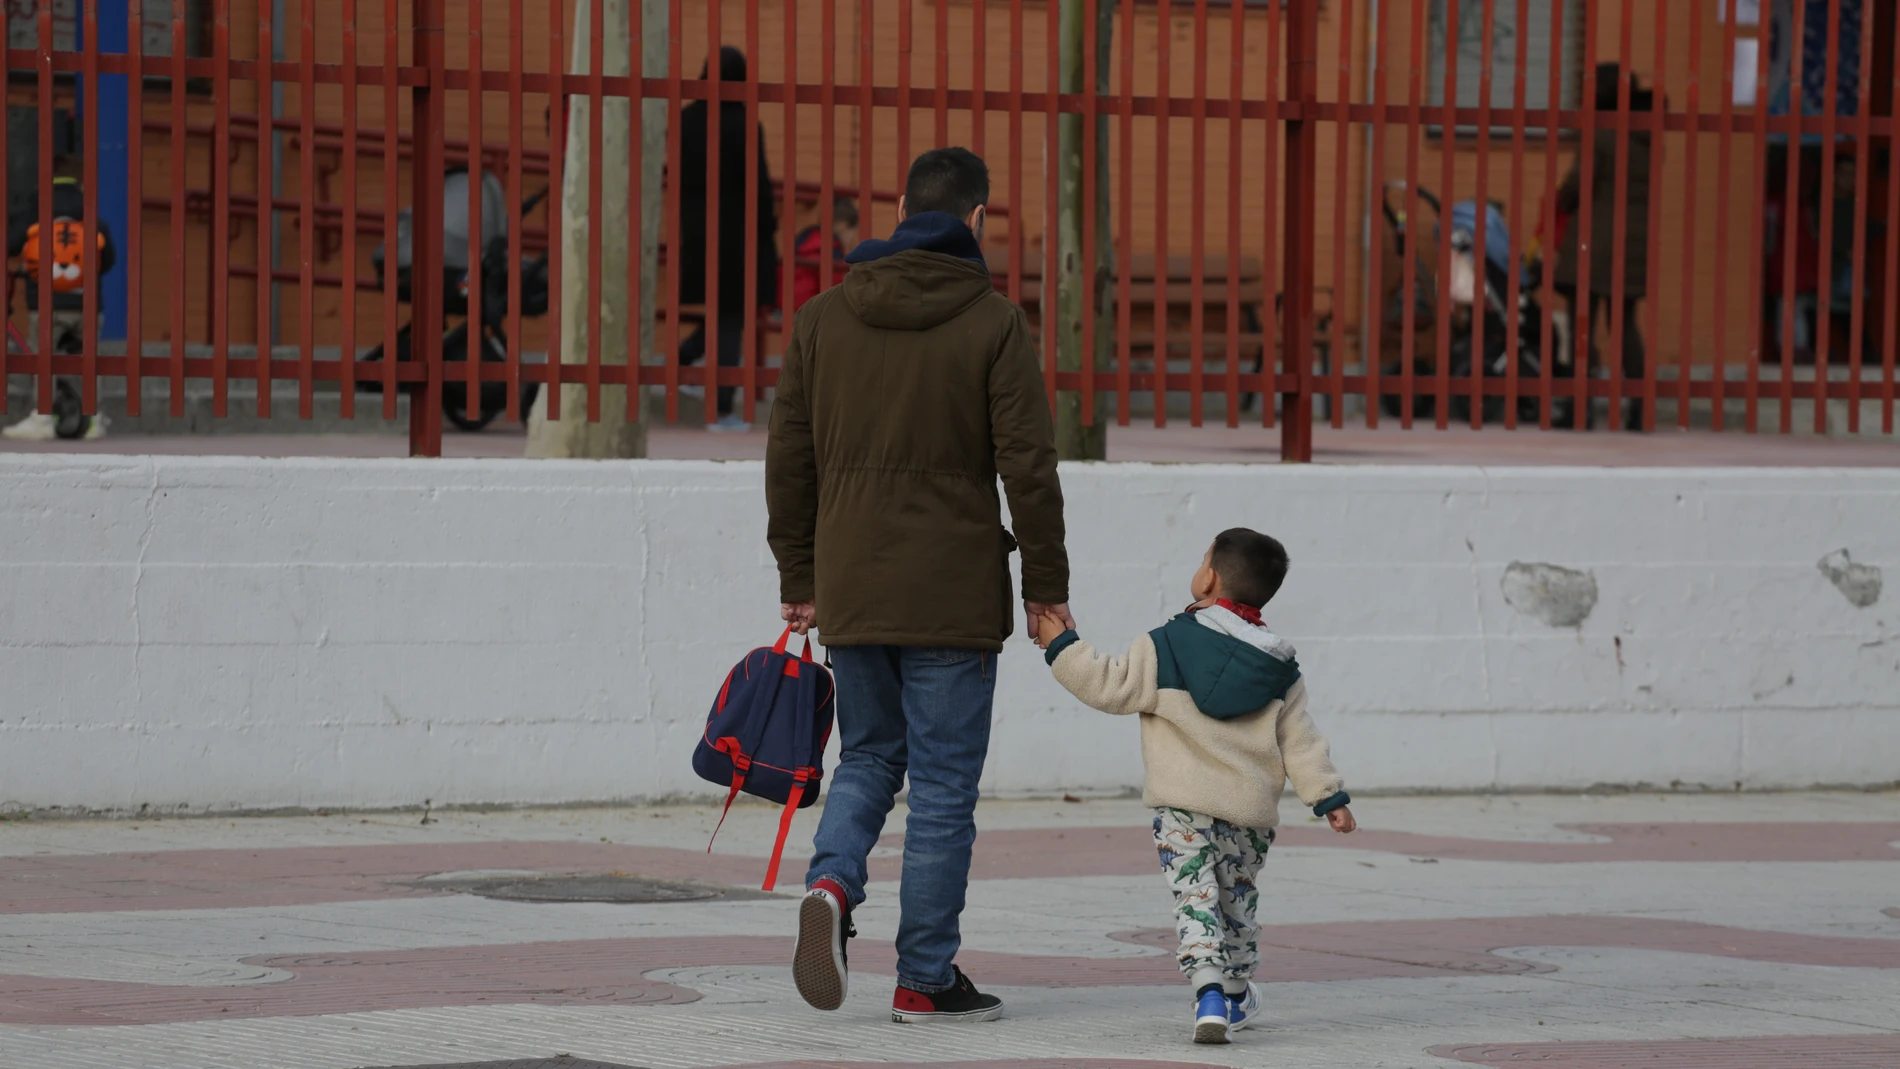 Entrada a un colegio púbico en Alcorcón, Madrid